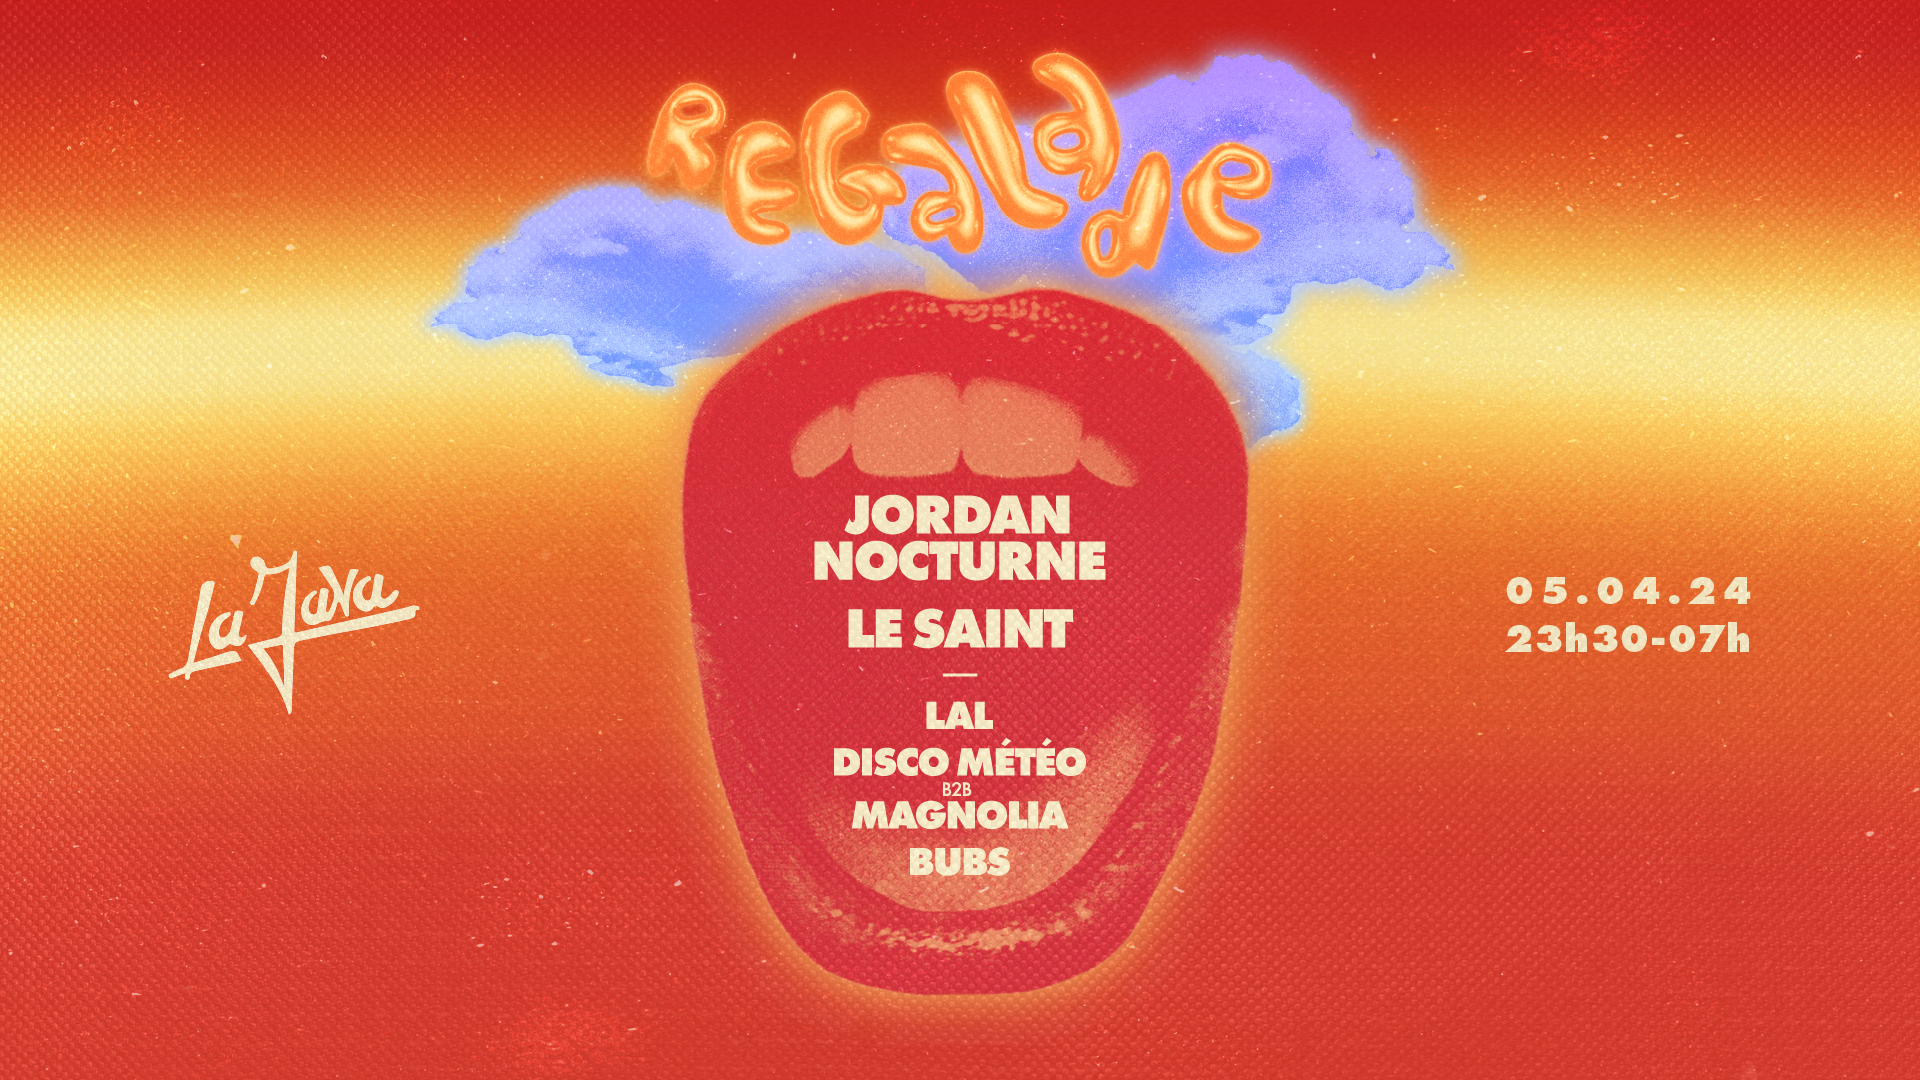 RÉGALADE X La Java: Jordan Nocturne, Le Saint, BUBS & MORE - フライヤー表